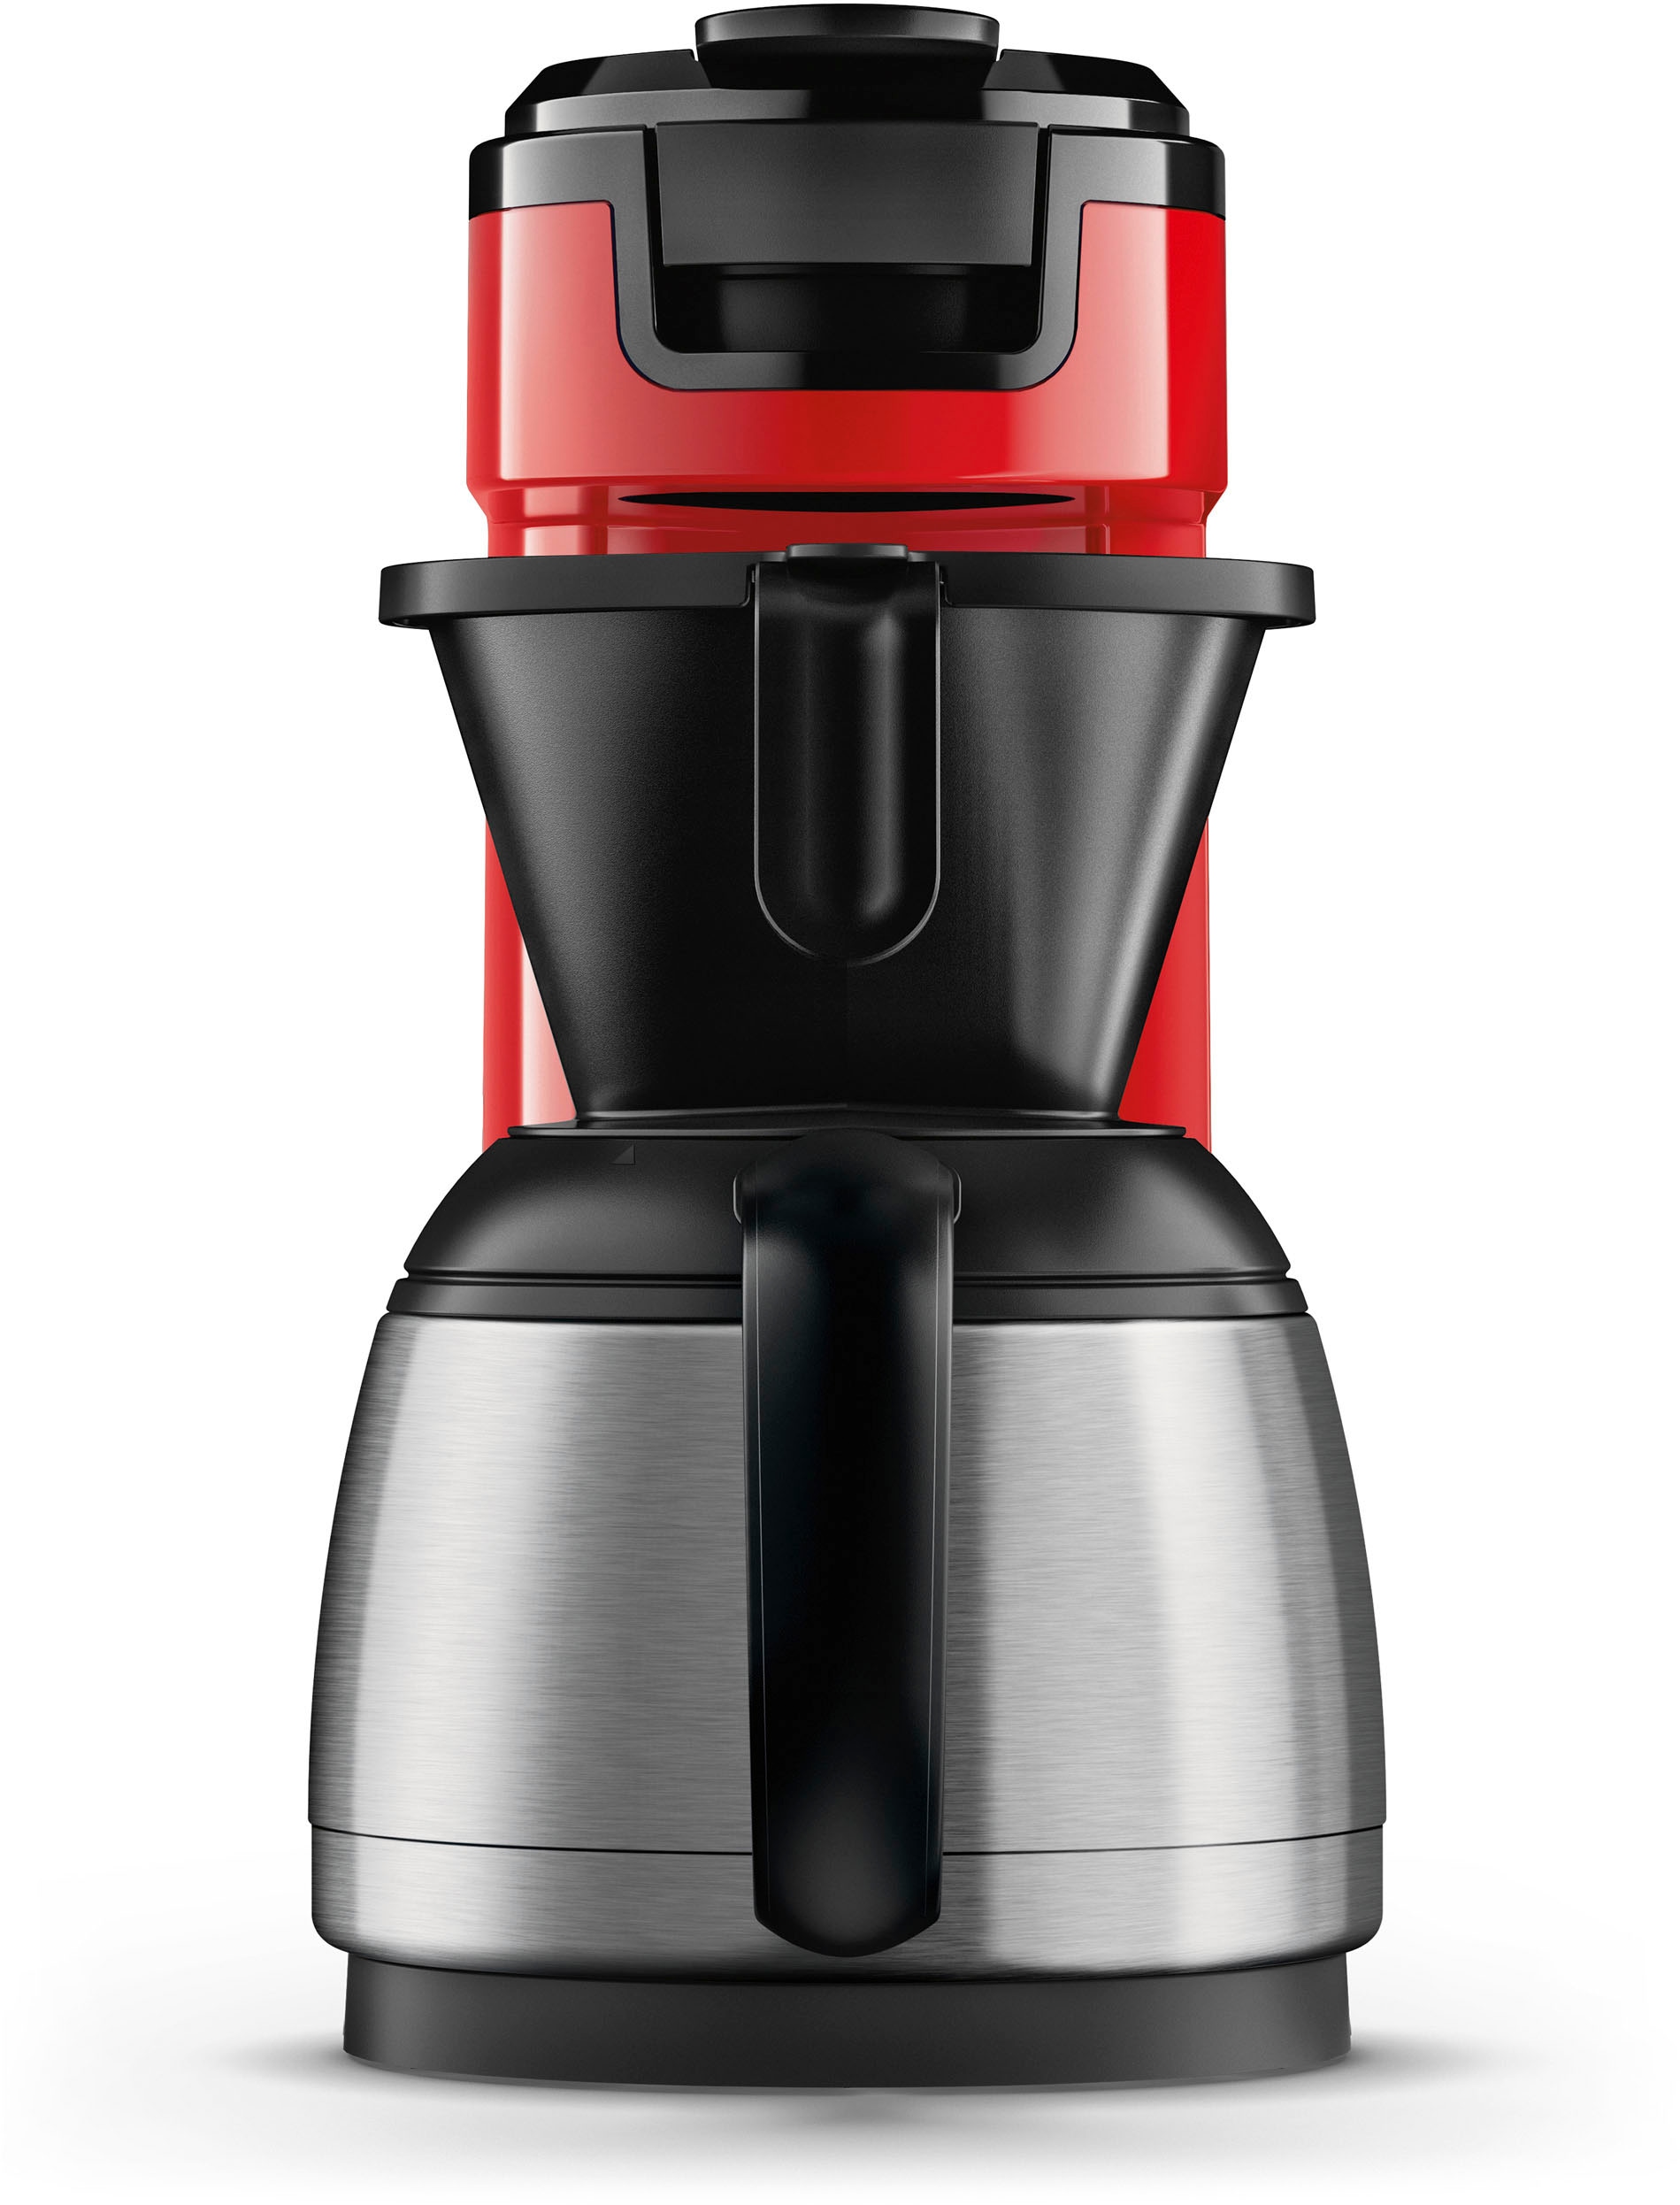 Philips Senseo Kaffeepadmaschine »Switch HD6592/84«, 1 l Kaffeekanne, inkl. Kaffeepaddose im Wert von 9,90 € UVP